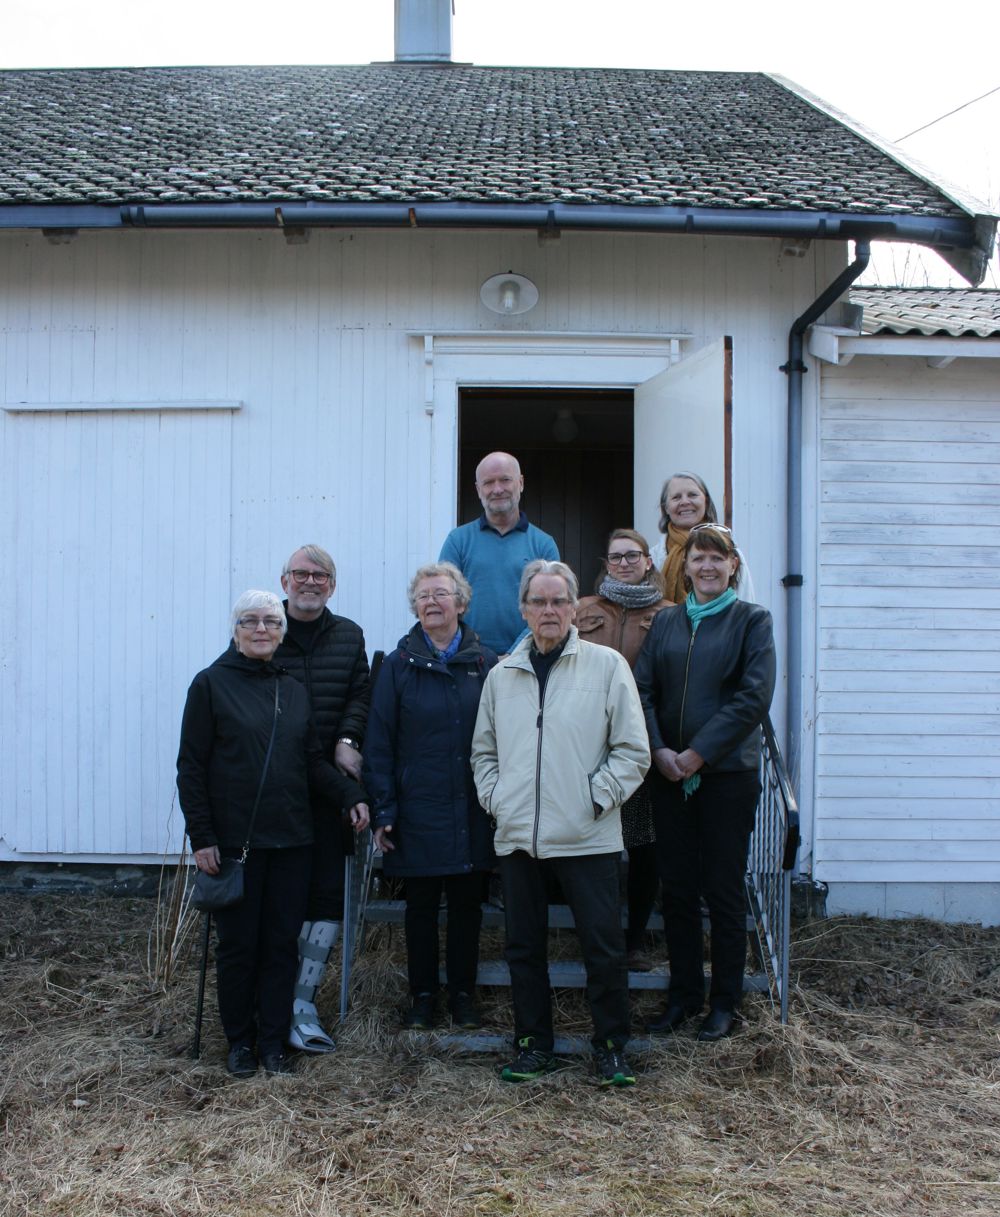 Fra venstre: Sølvi Malmbekk, Svein Malmbekk, Aud Pedersen, Tom Solli, Knut Steinar Pedersen, Sandra Persson, Elin Vangen, Hilde Fylling. Foto: Monica Nilsen